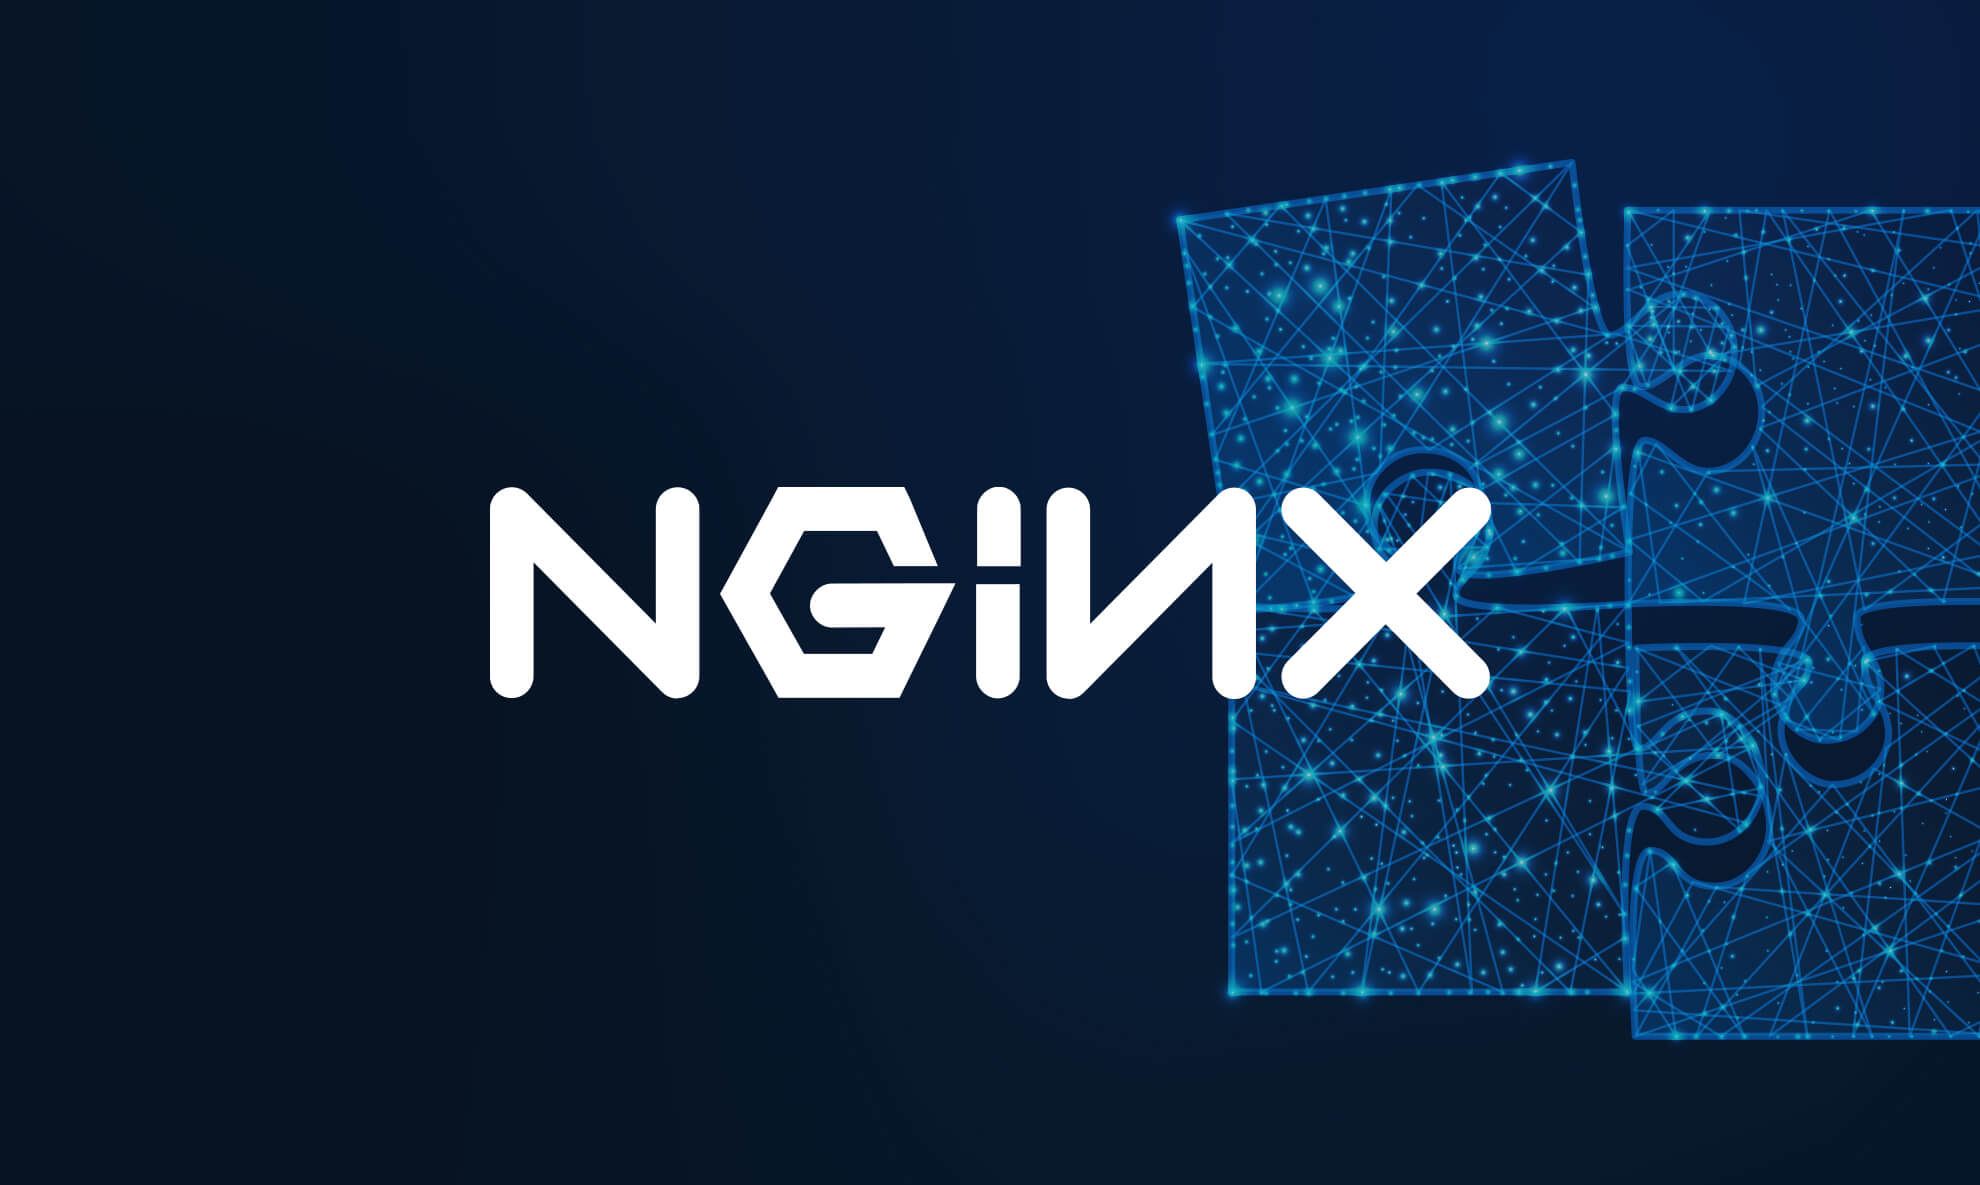 NGINX monitoring tool blog post header